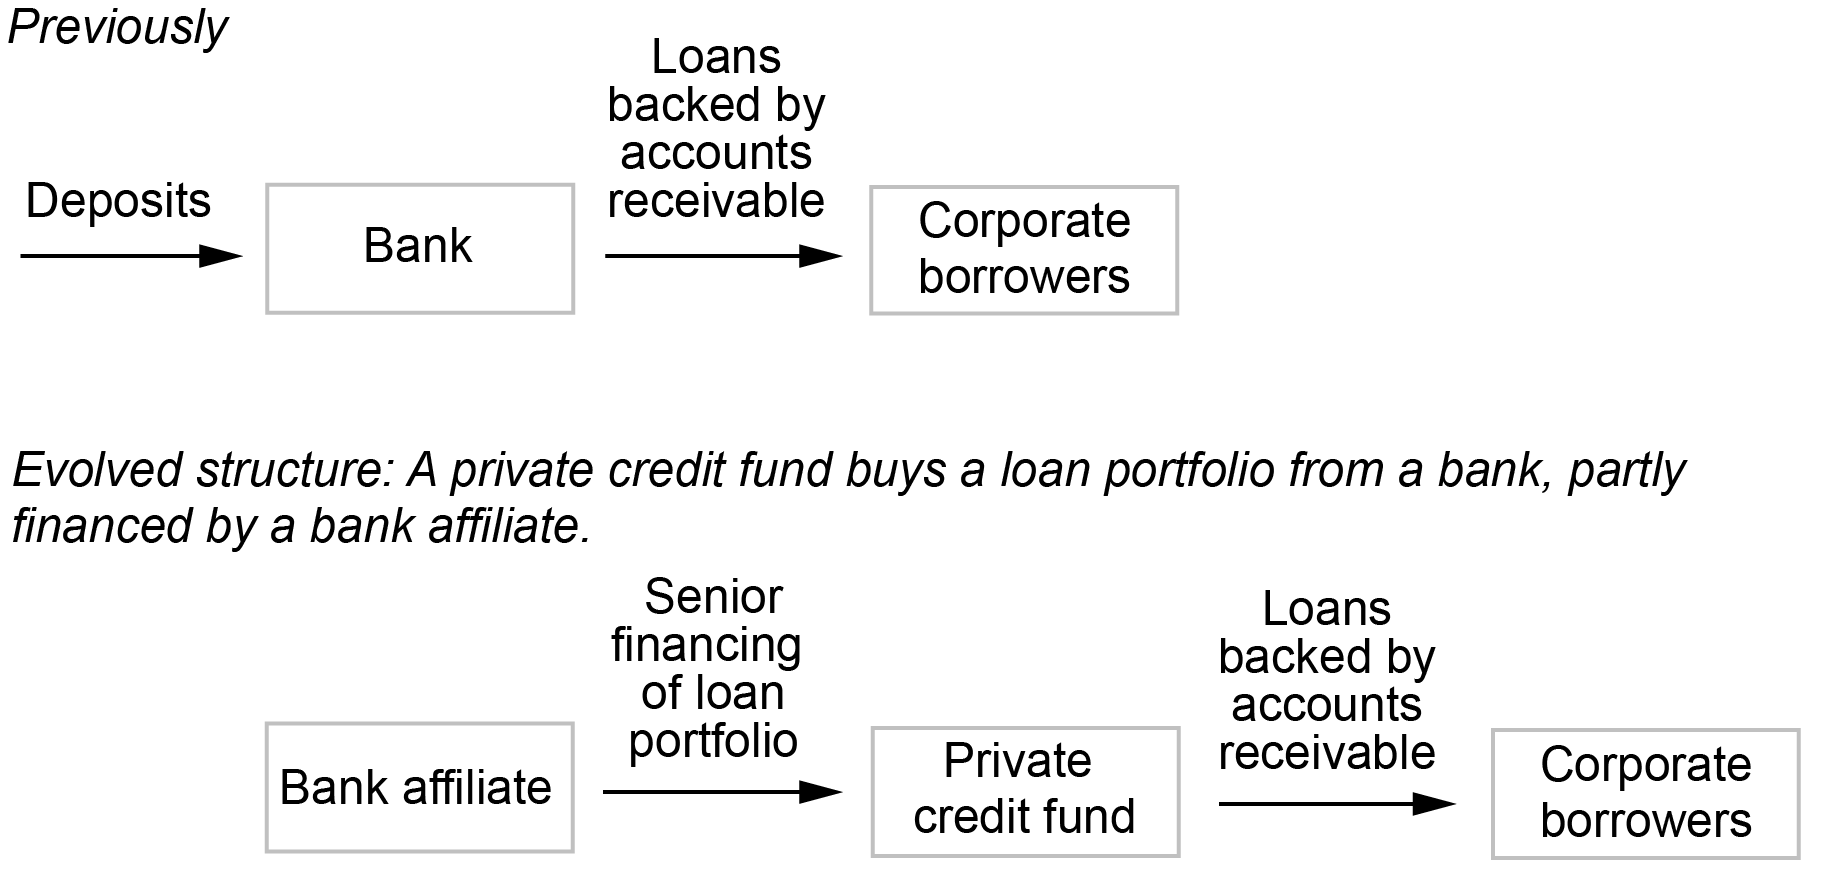 Alt=”exploração mais aprofundada do cenário no primeiro gráfico, onde os resultados das dificuldades dos bancos impulsionadas pelas IFNB podem reduzir o apoio dos bancos às mesmas IFNB através de empréstimos mais restritivos (ronda 3);  por exemplo, reduzindo as linhas de crédito para fundos de investimento imobiliário (REITs) e reduzindo os empréstimos a prazo para obrigações de empréstimo colateralizadas (CLOs) (rodada 4), por sua vez potencialmente fazendo com que os REITs reduzam o investimento em imóveis e os CLOs reduzam os investimentos em empréstimos alavancados”. 